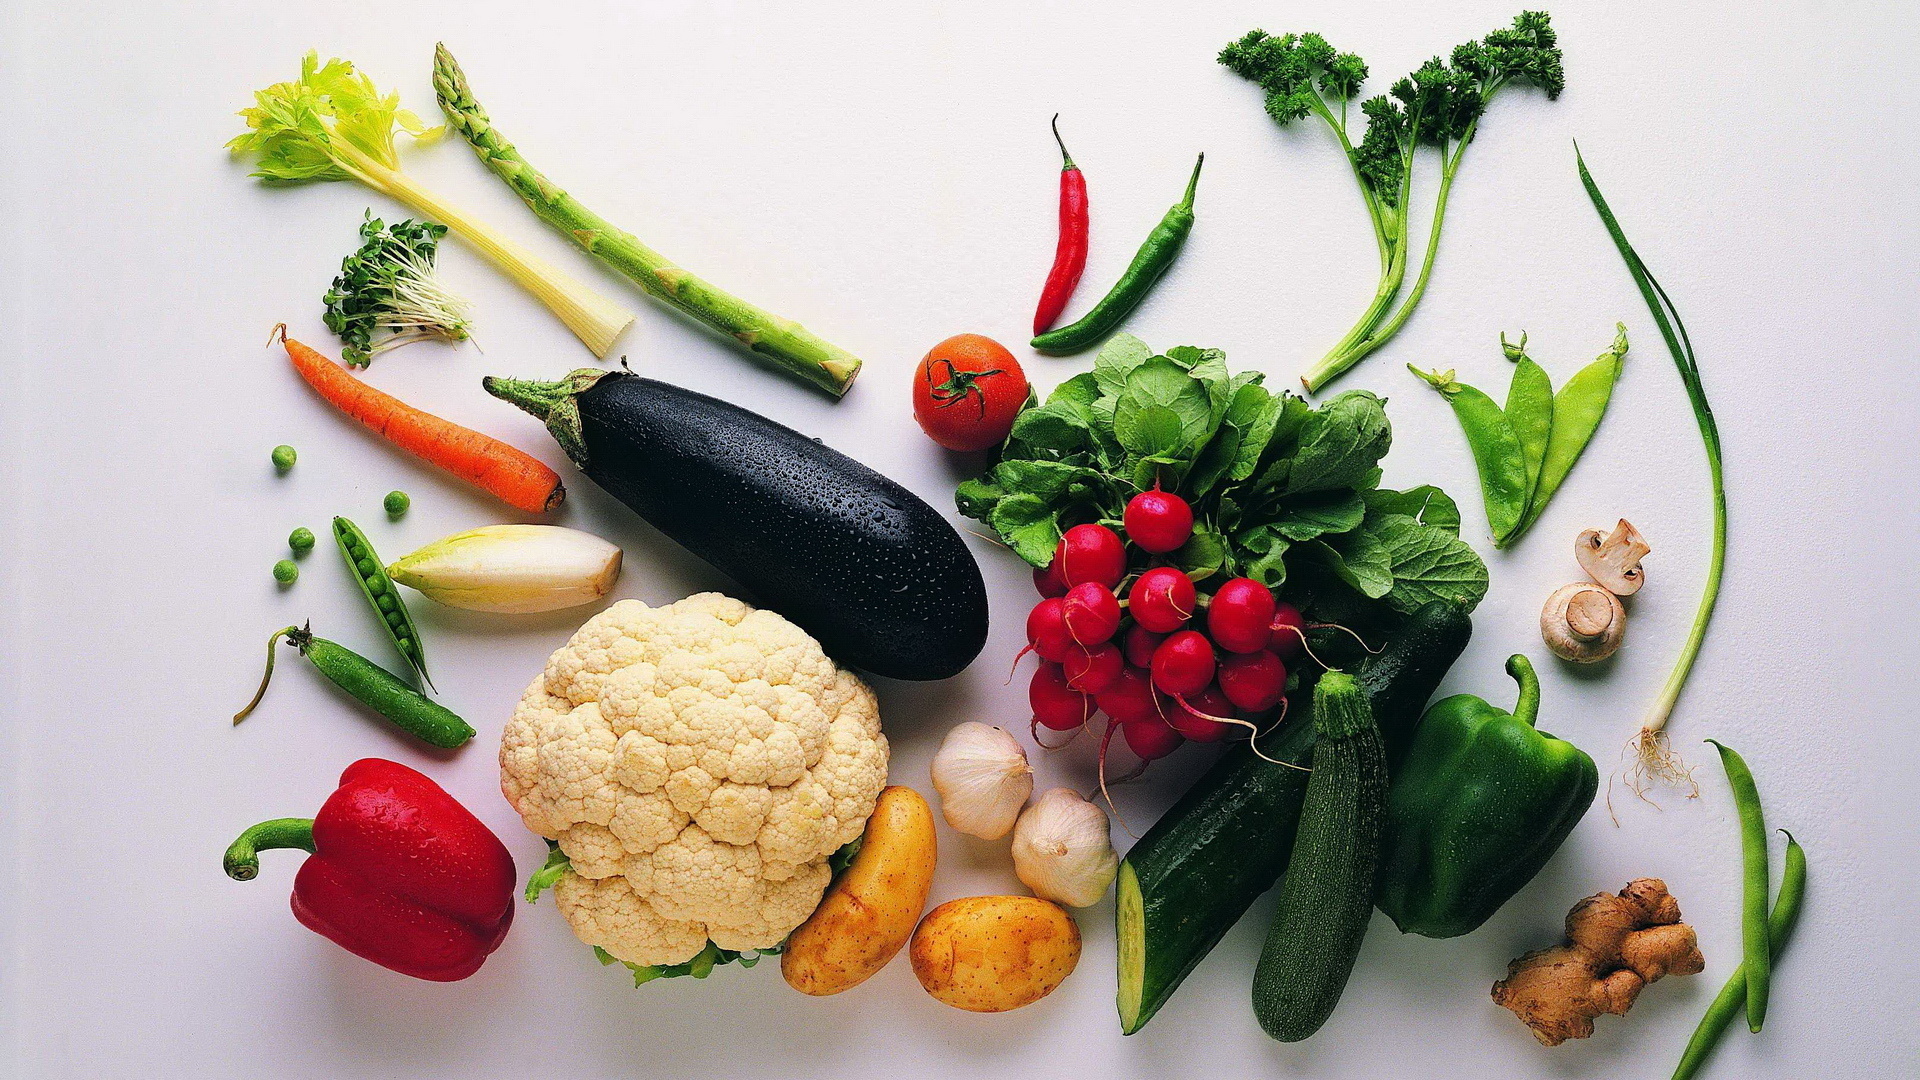 Download mobile wallpaper Food, Vegetables for free.